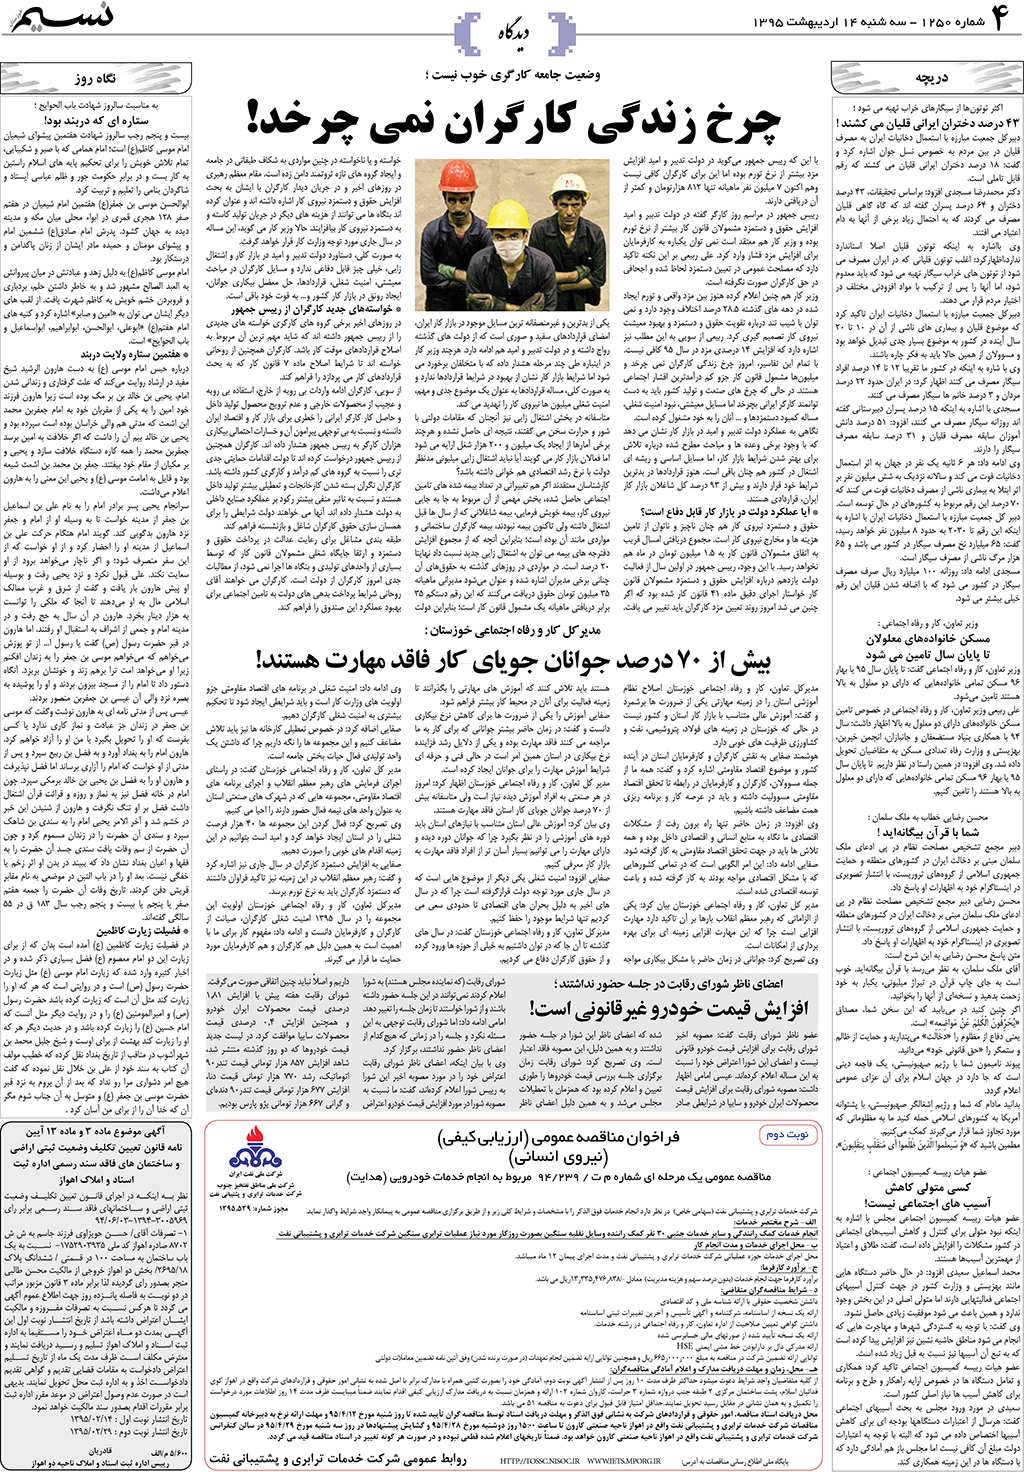 صفحه دیدگاه روزنامه نسیم شماره 1250